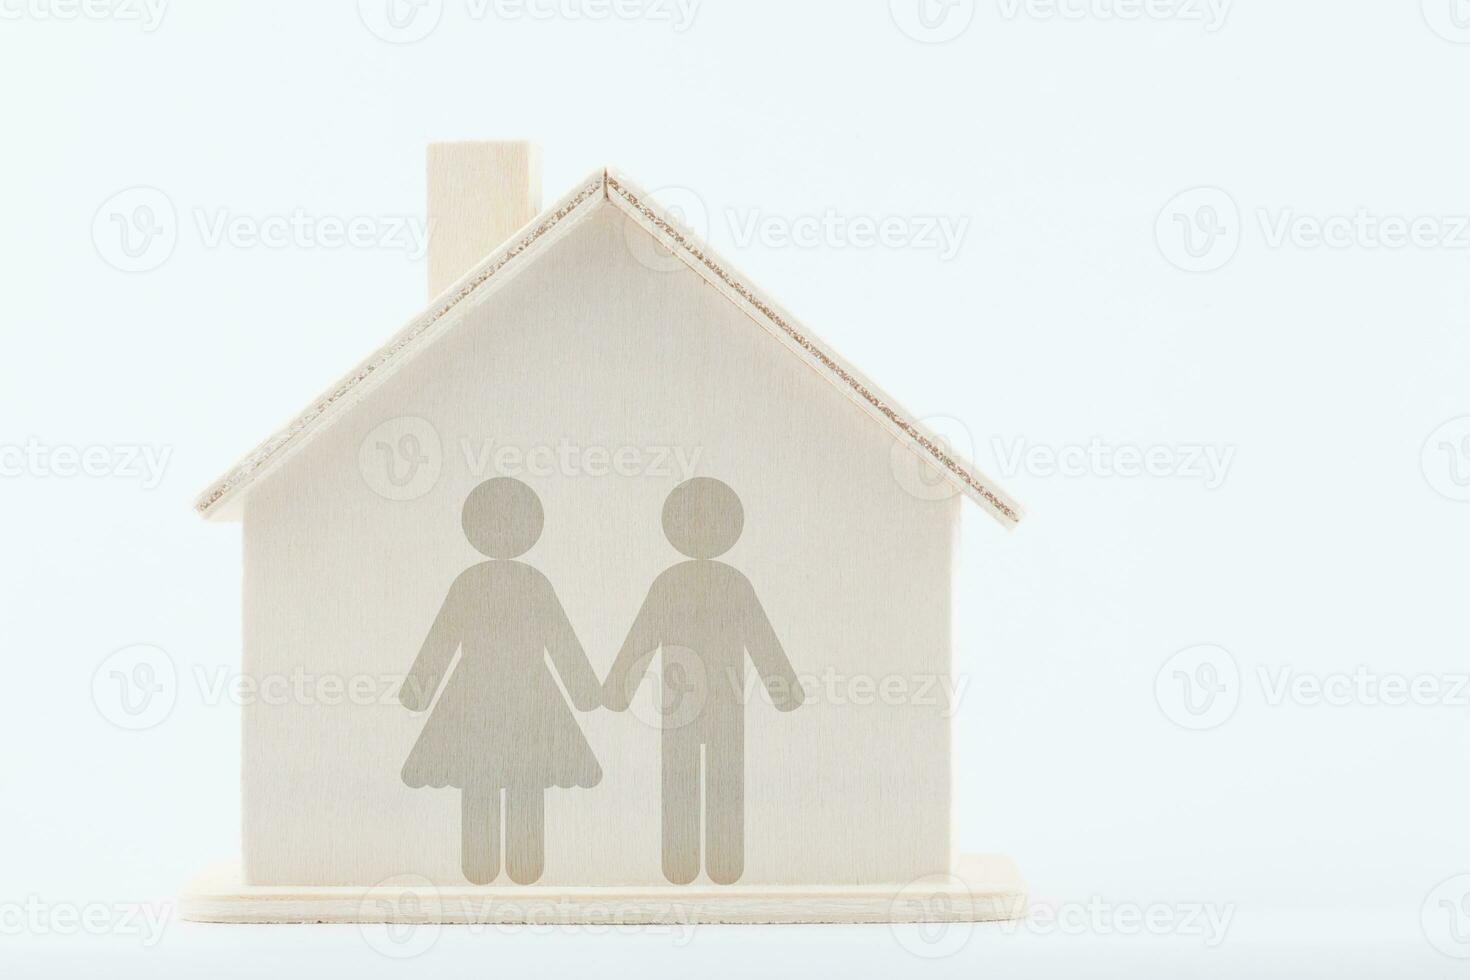 hétérosexuel couple à maison. famille concept. photo